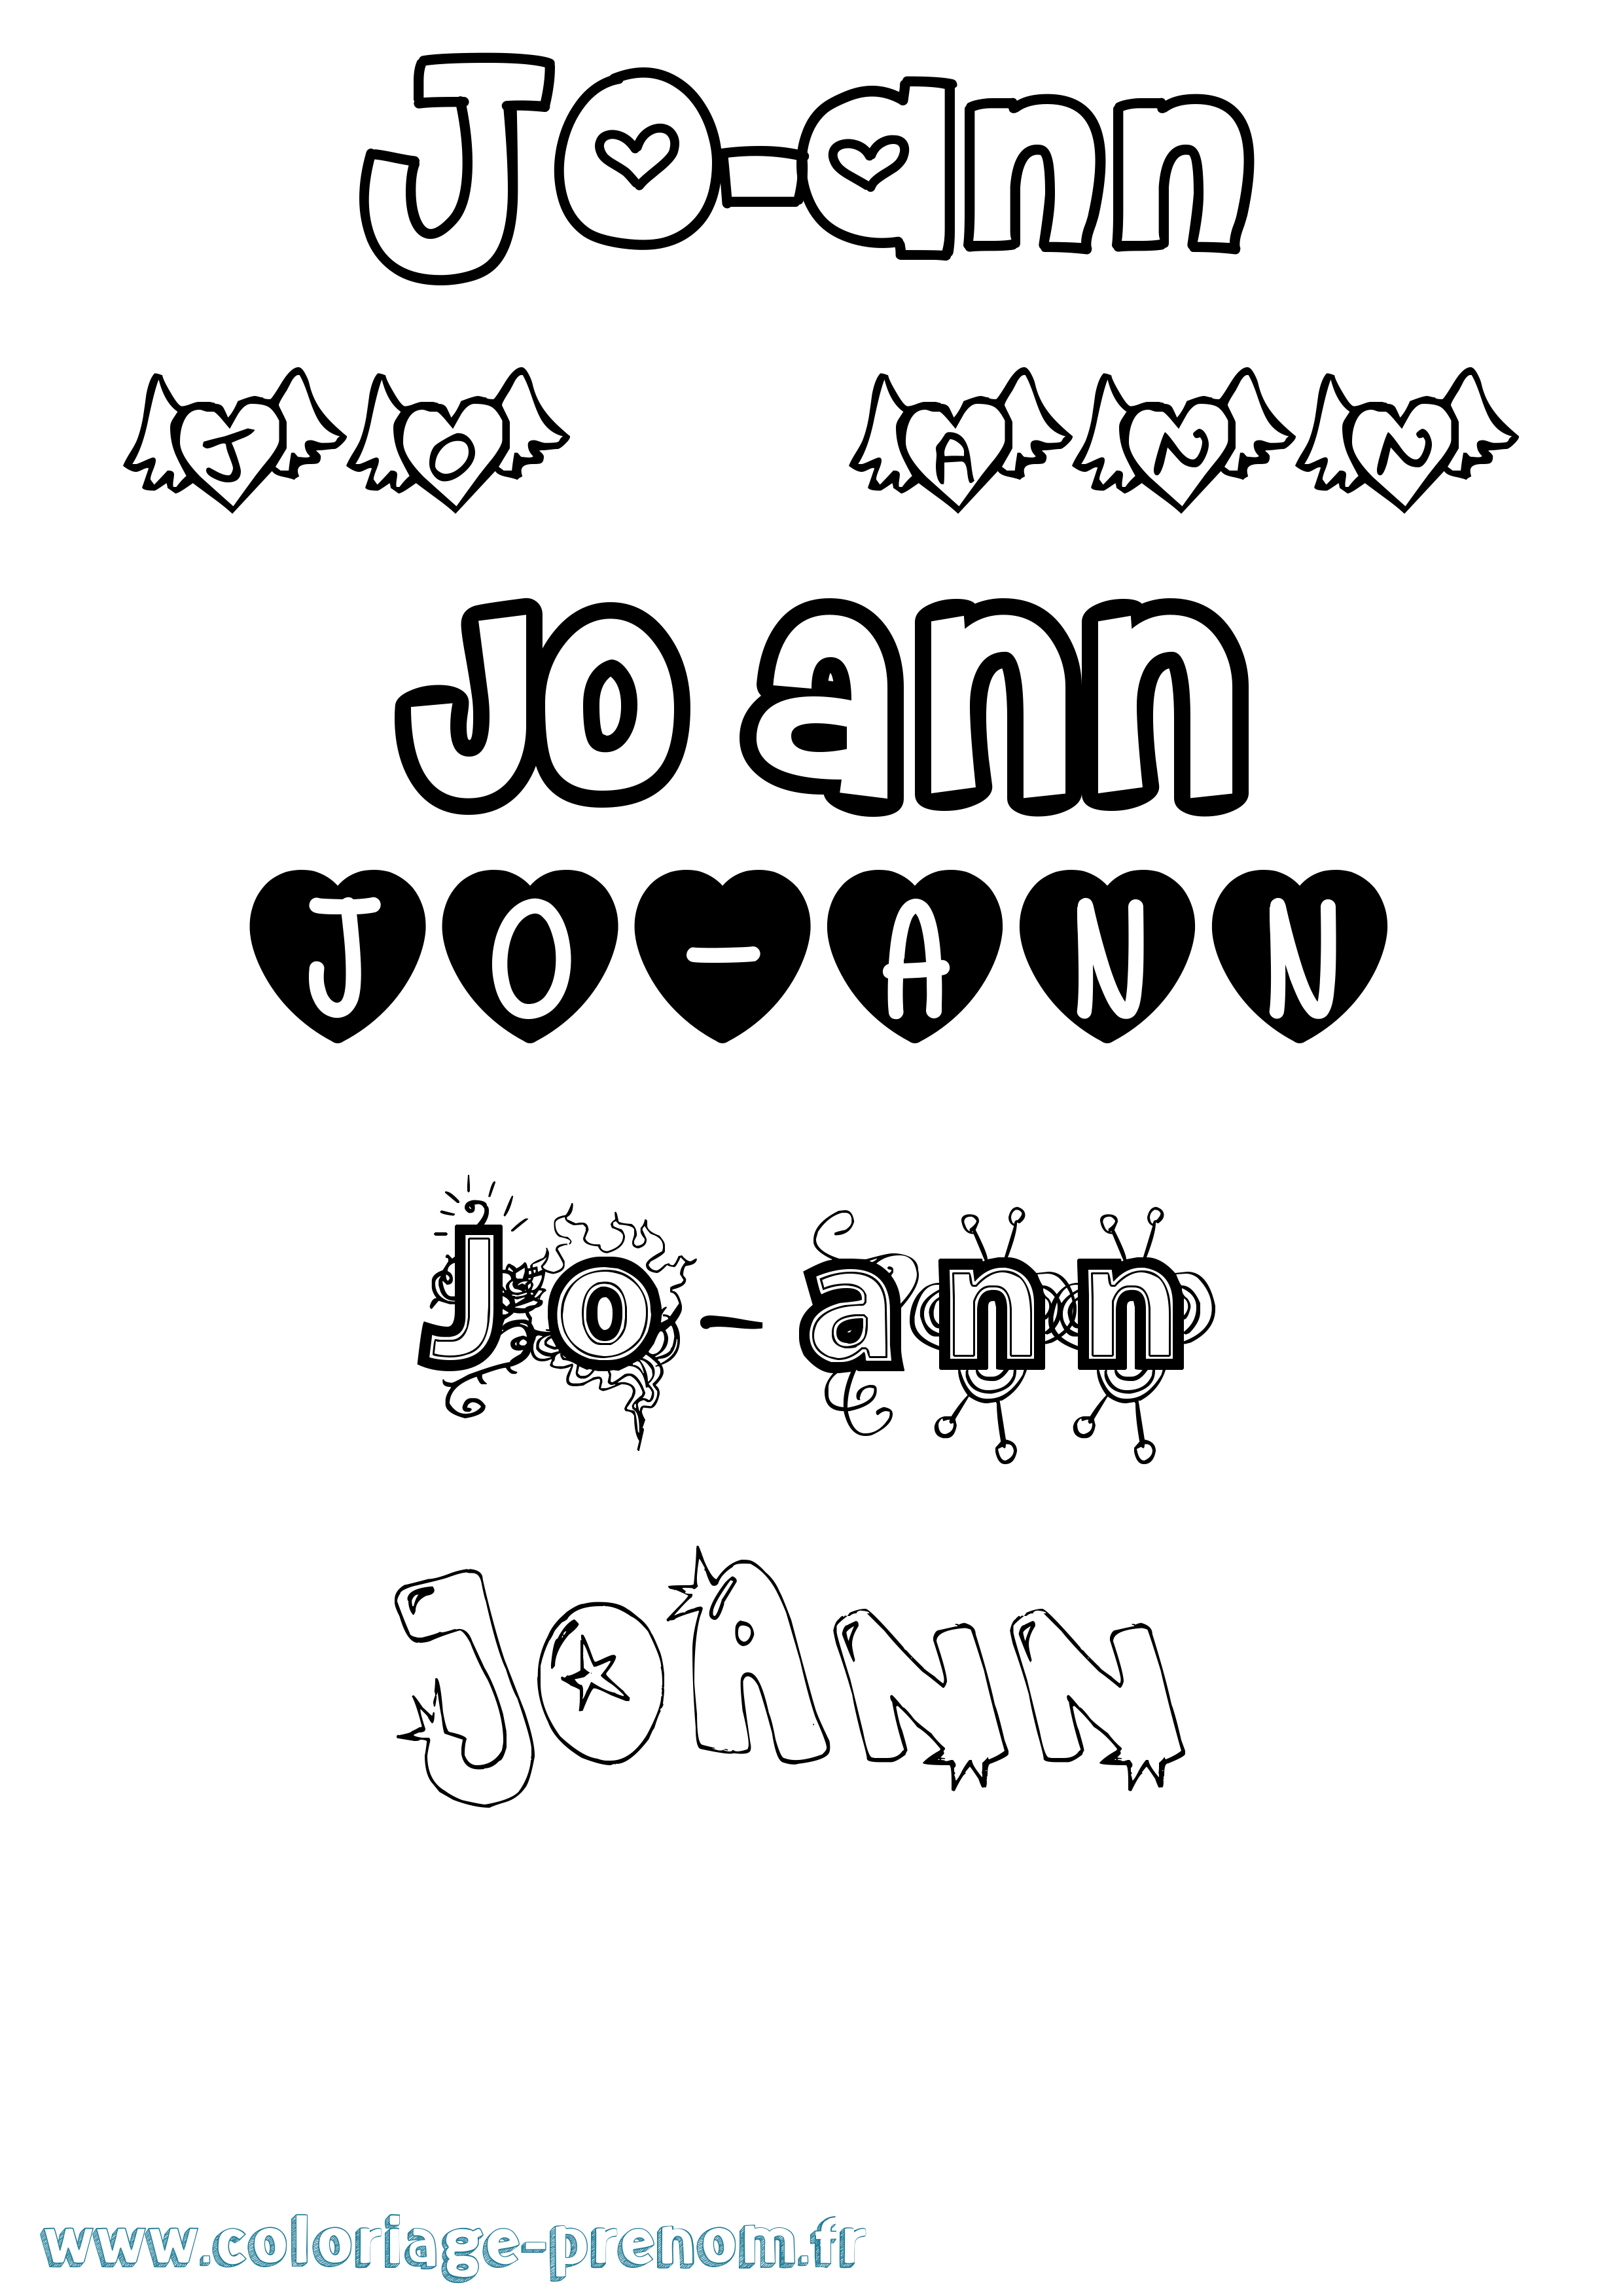 Coloriage prénom Jo-Ann Girly